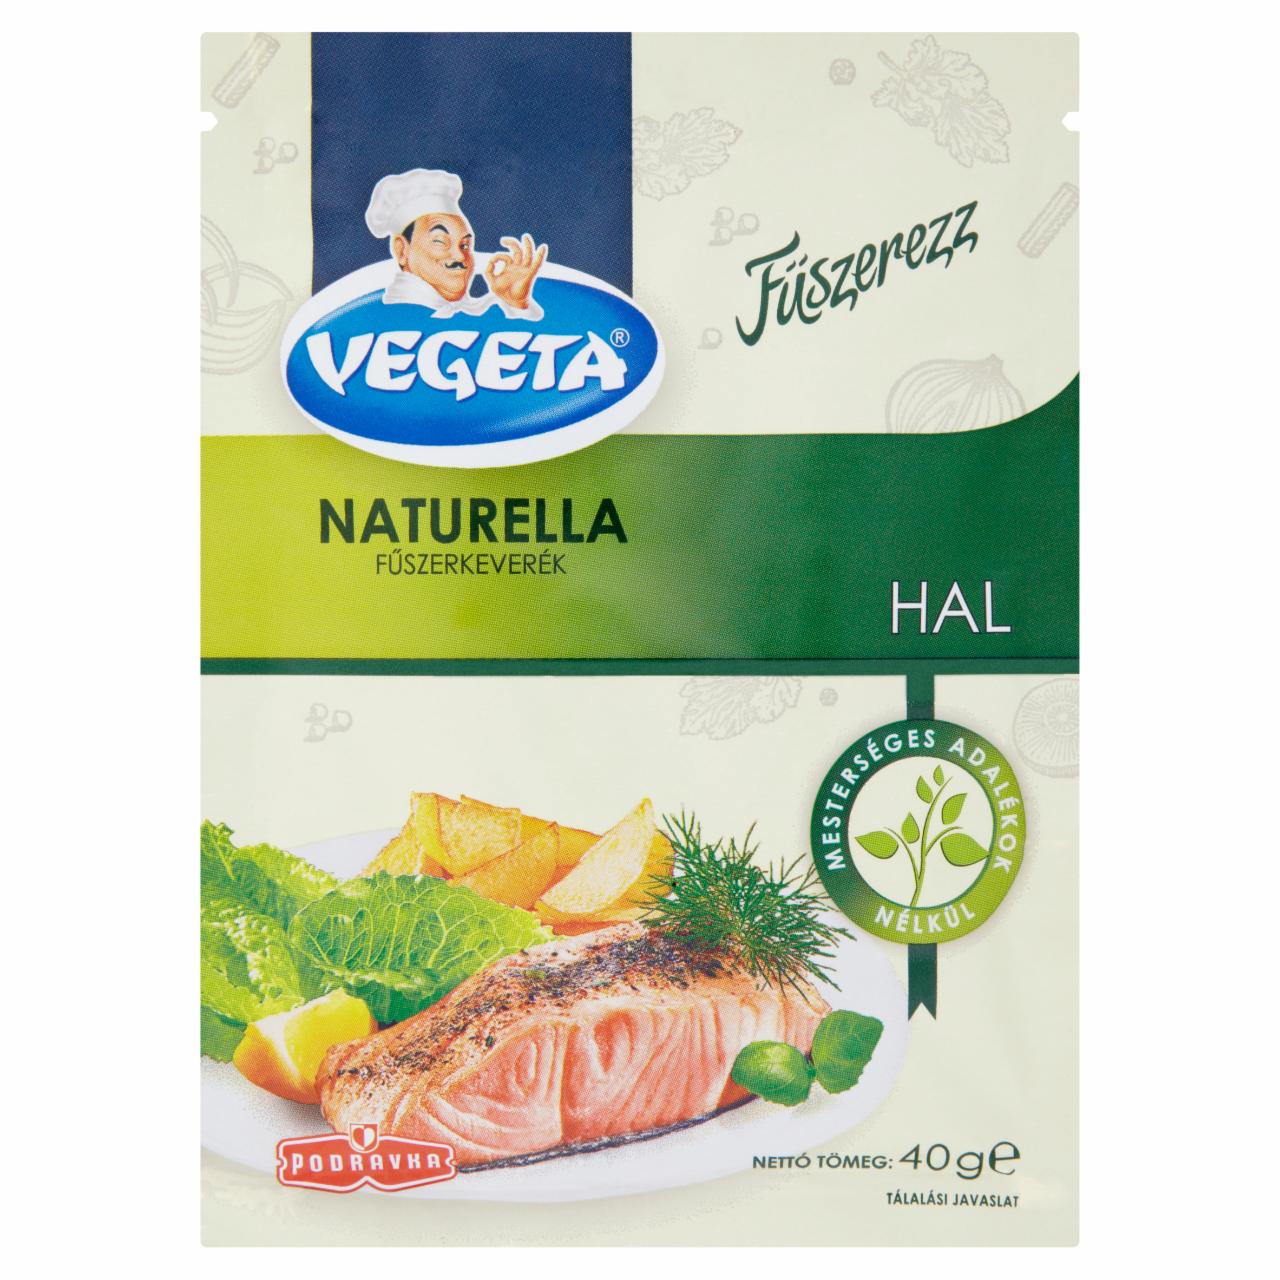 Képek - Vegeta Naturella hal fűszerkeverék 40 g